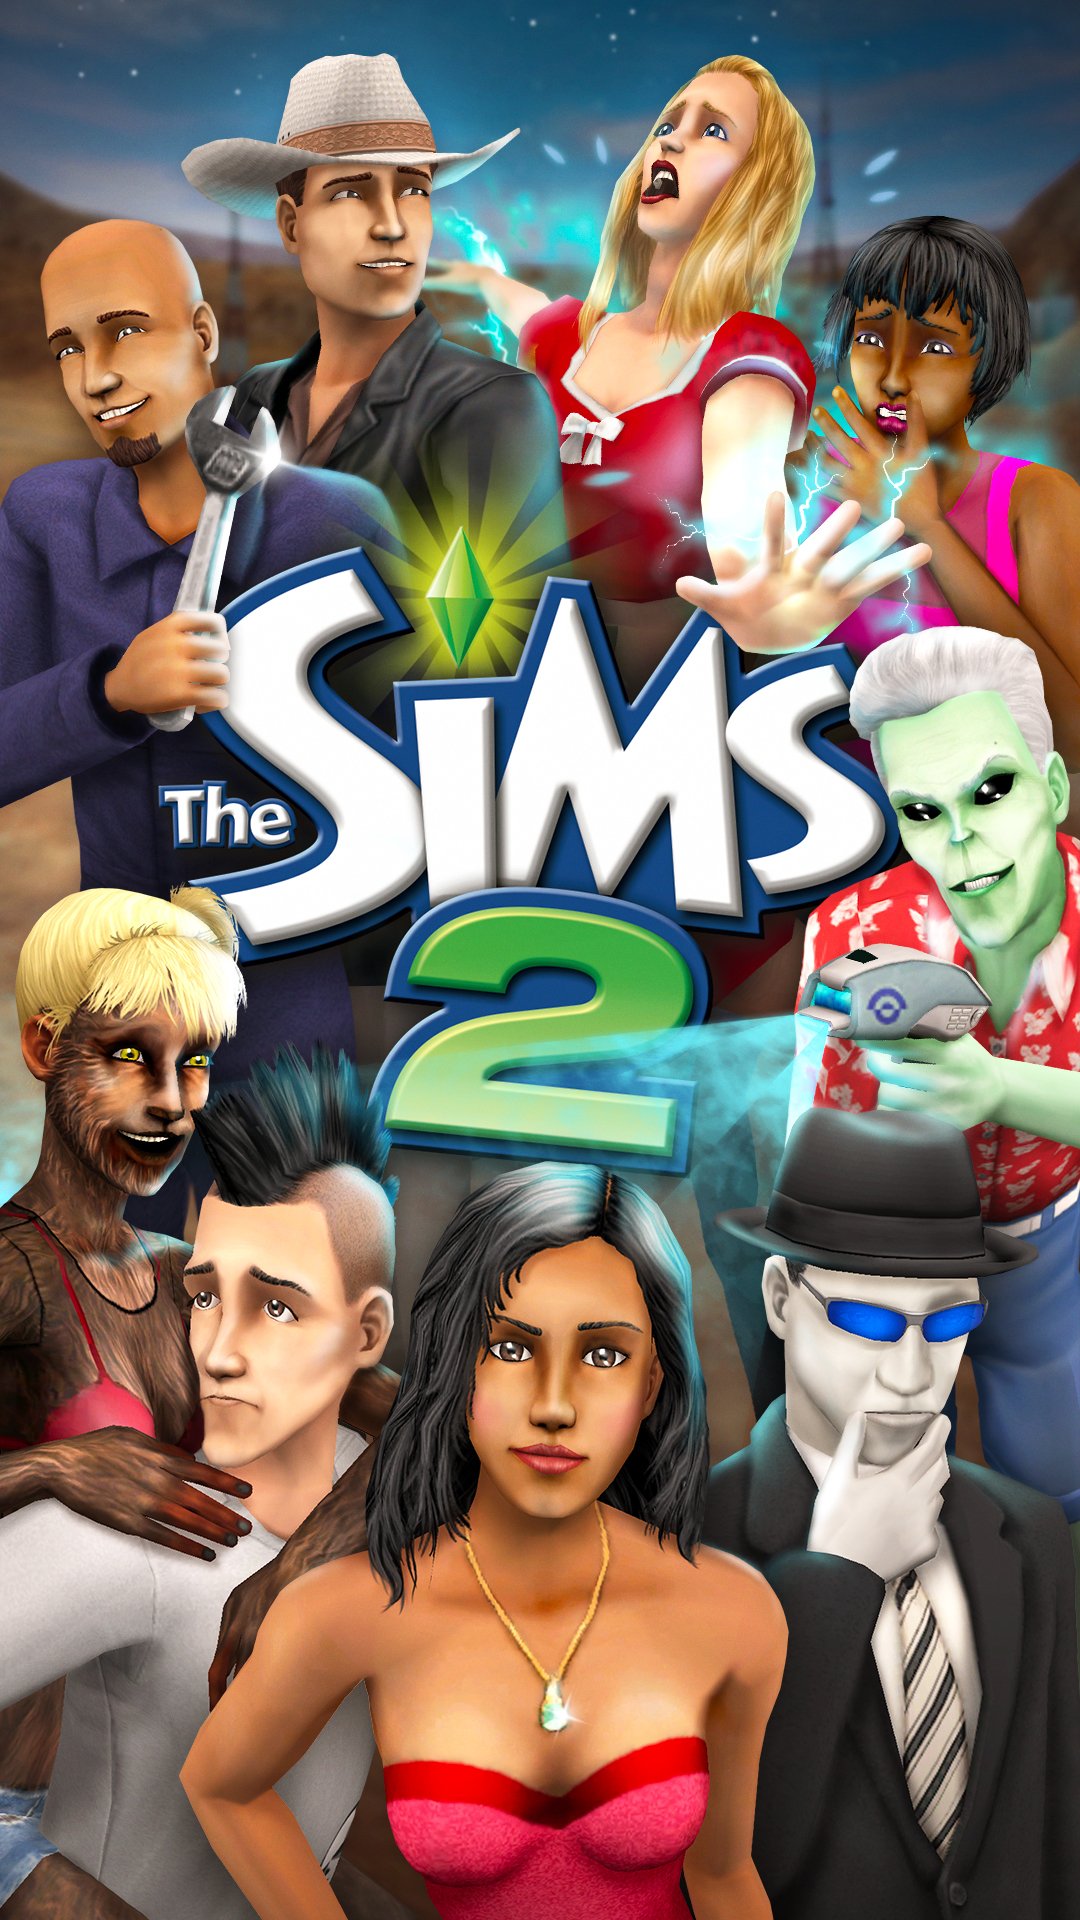 Designer Cria Novas Artes Nostálgicas em HD do The Sims 2